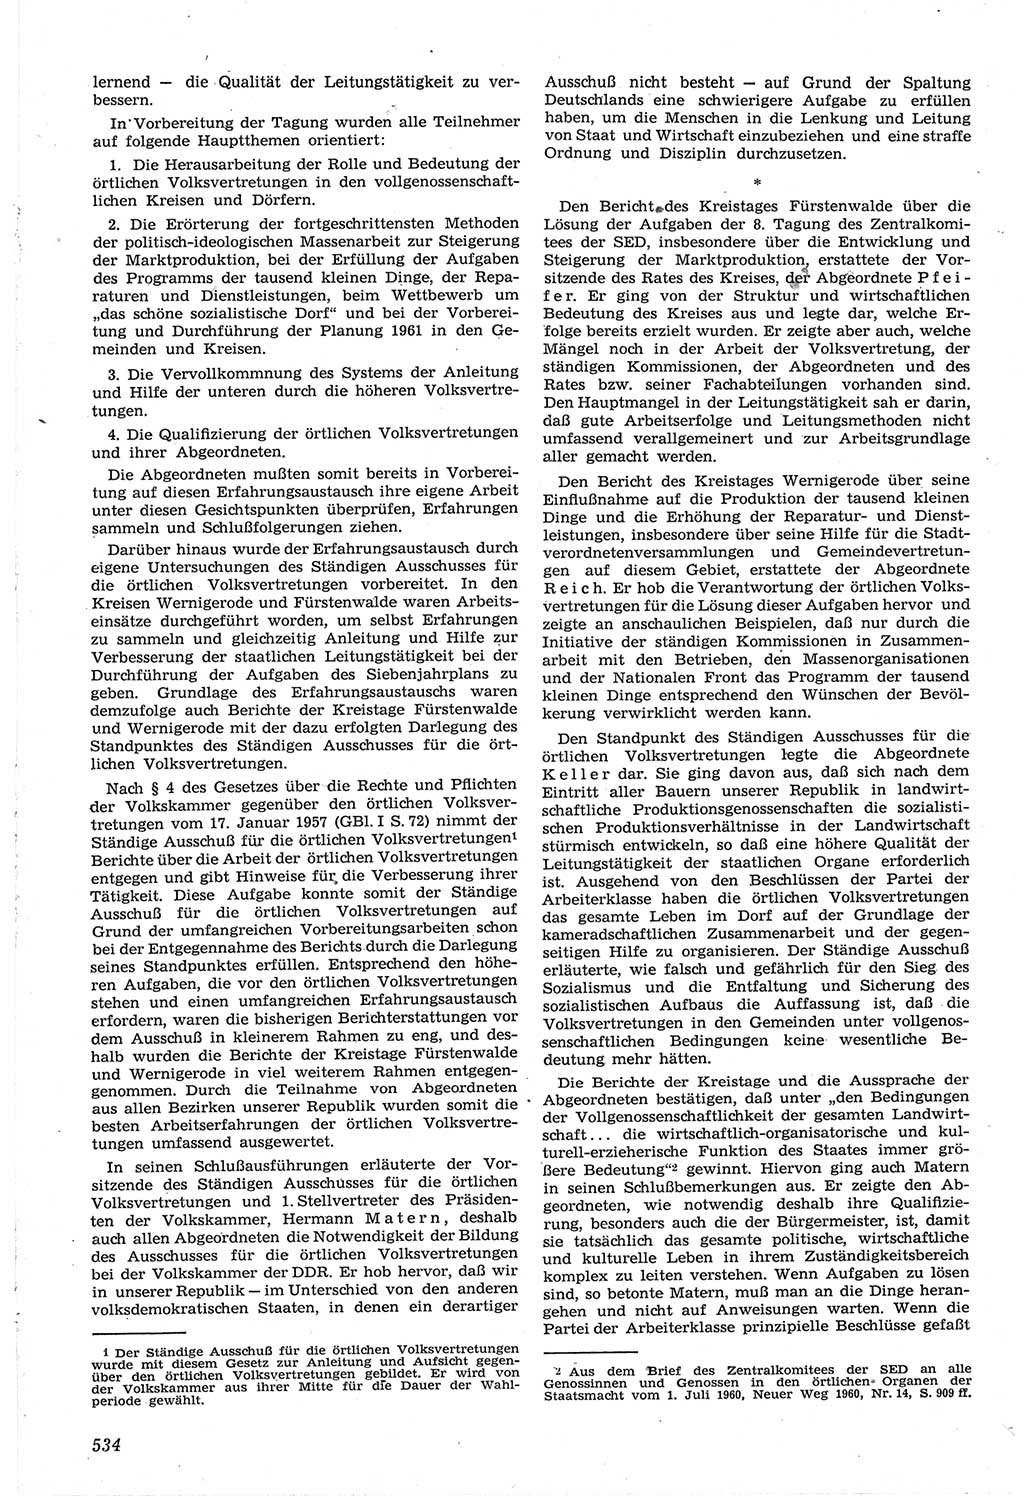 Neue Justiz (NJ), Zeitschrift für Recht und Rechtswissenschaft [Deutsche Demokratische Republik (DDR)], 14. Jahrgang 1960, Seite 534 (NJ DDR 1960, S. 534)